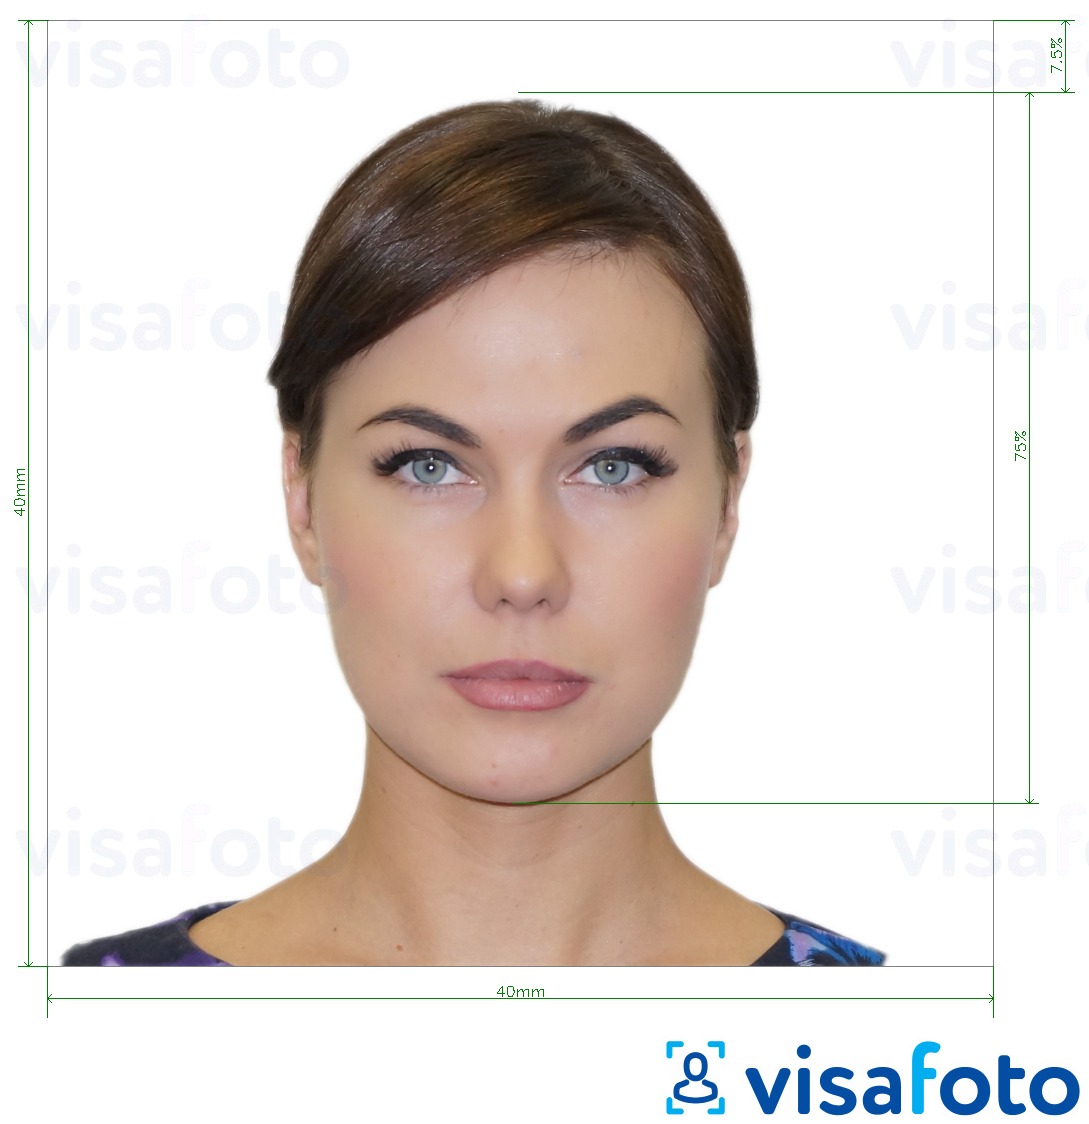 نمونه ی یک عکس برای ایتالیا پاسپورت 40x40 میلیمتر (کنسولگری لاتین) 4x4 سانتی متر با مشخصات دقیق